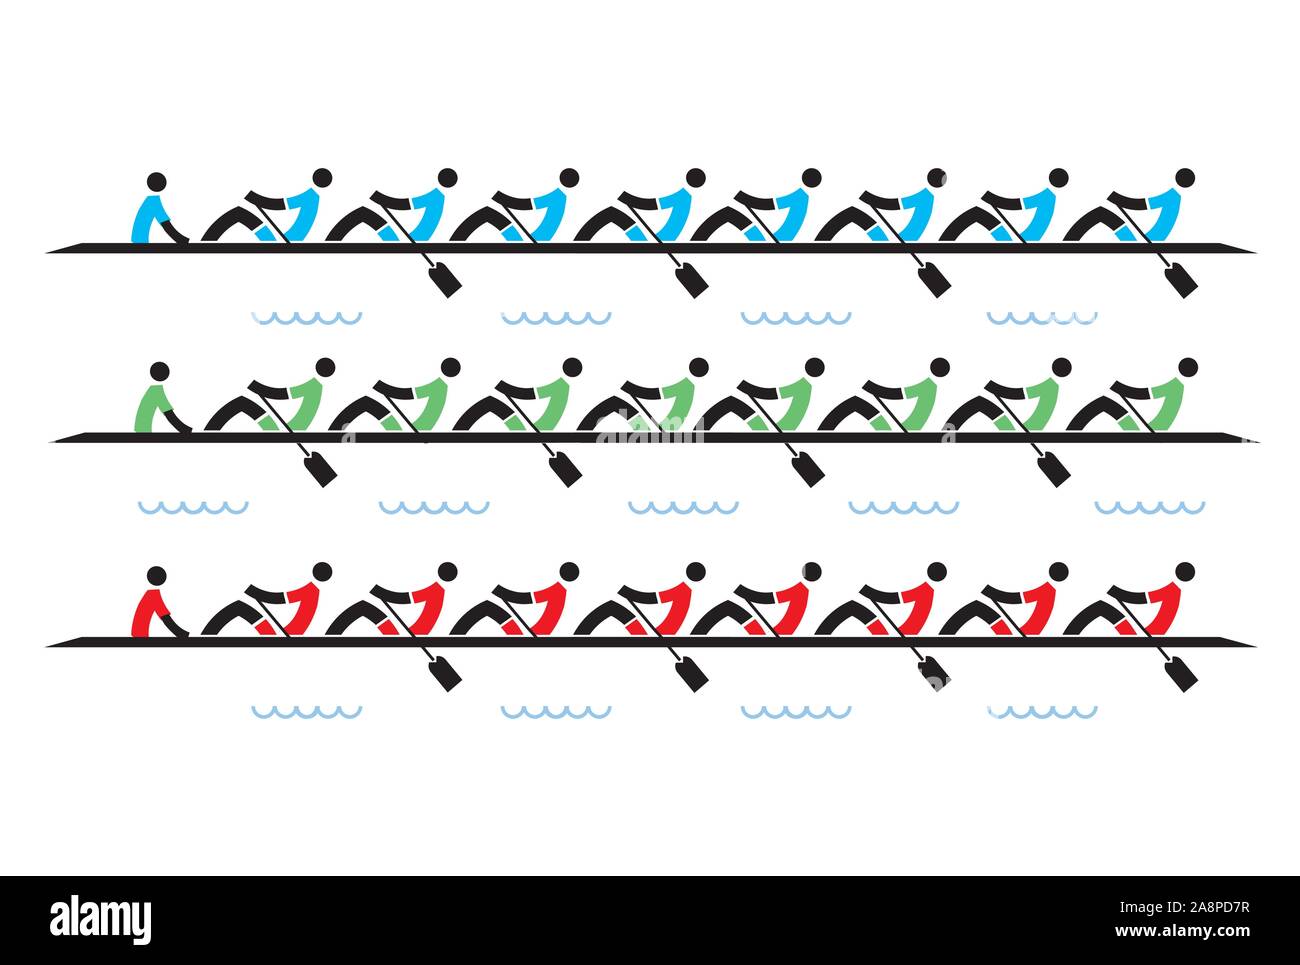 Gara di canottaggio eights, icone. Illustrazione stilizzata di vogatori concorrenti su sfondo bianco.Vettore disponibile. Illustrazione Vettoriale